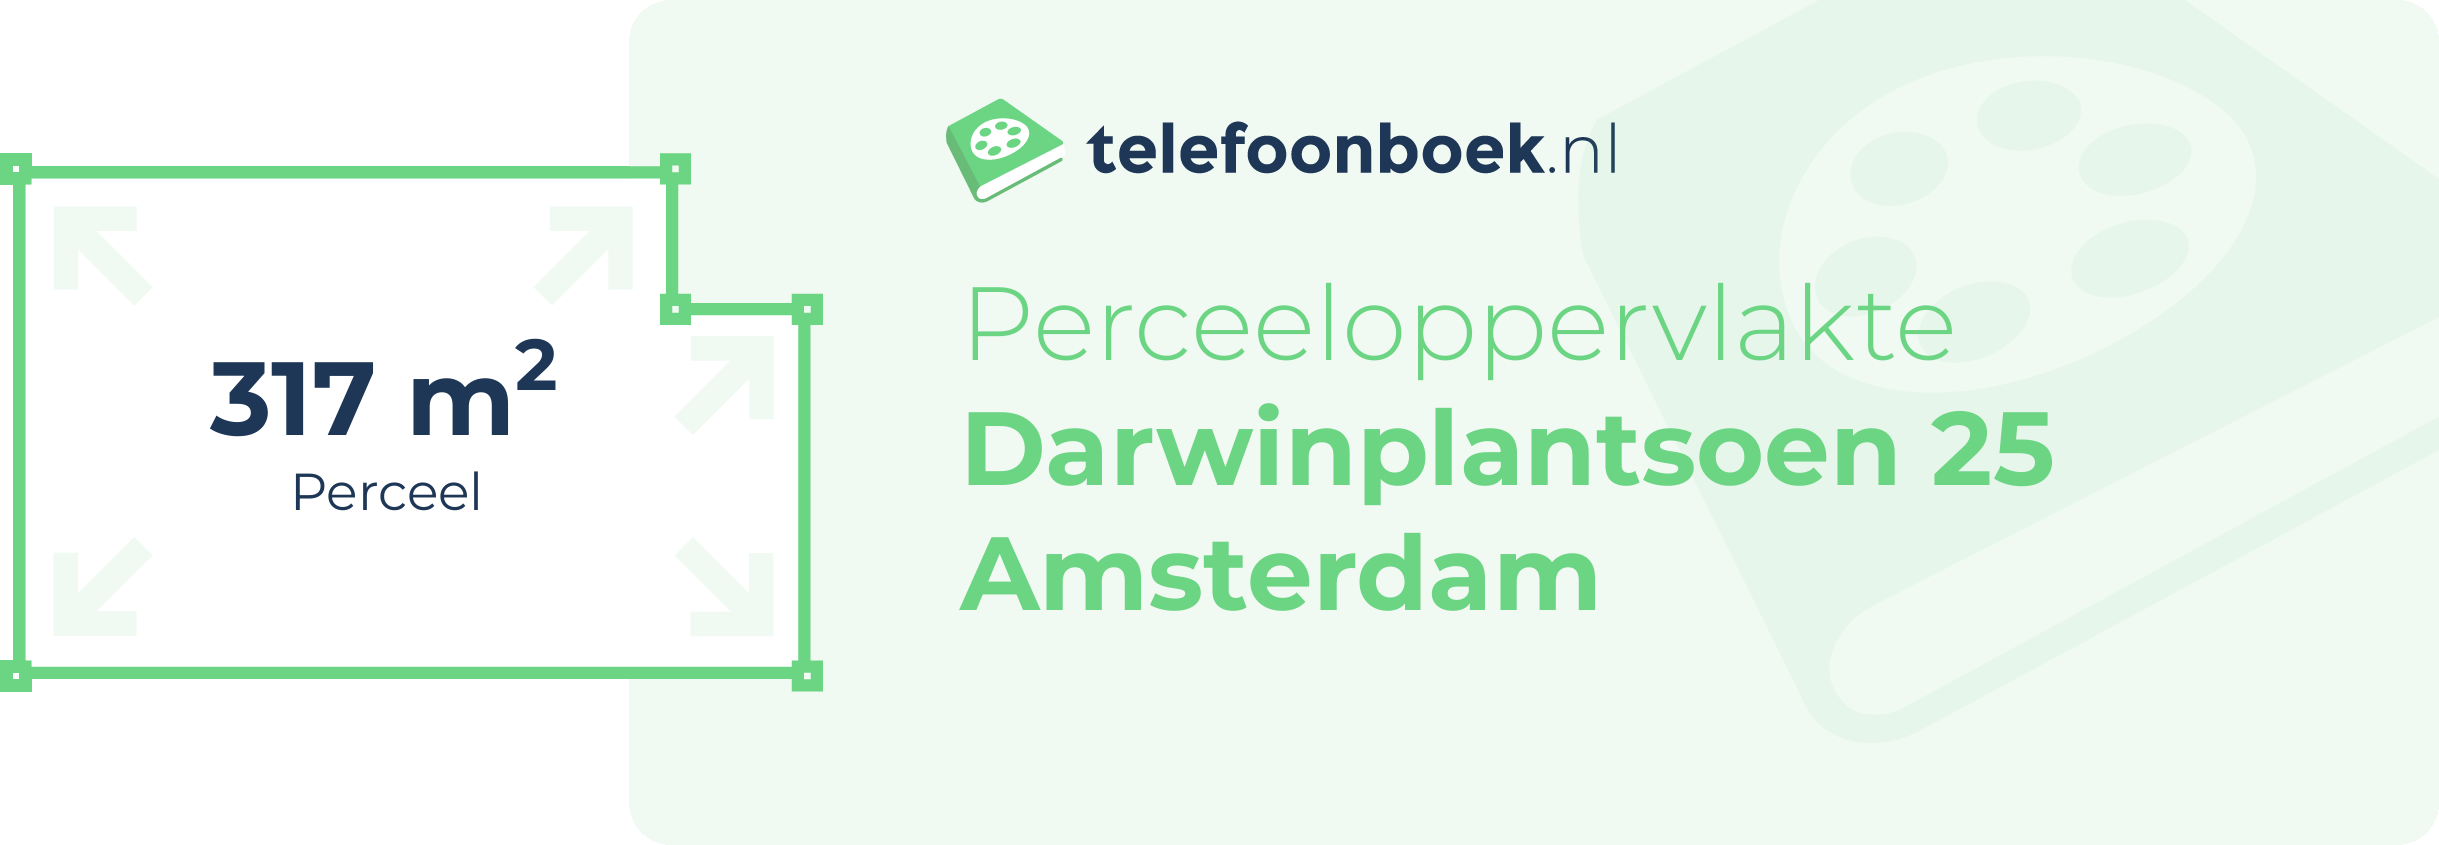 Perceeloppervlakte Darwinplantsoen 25 Amsterdam